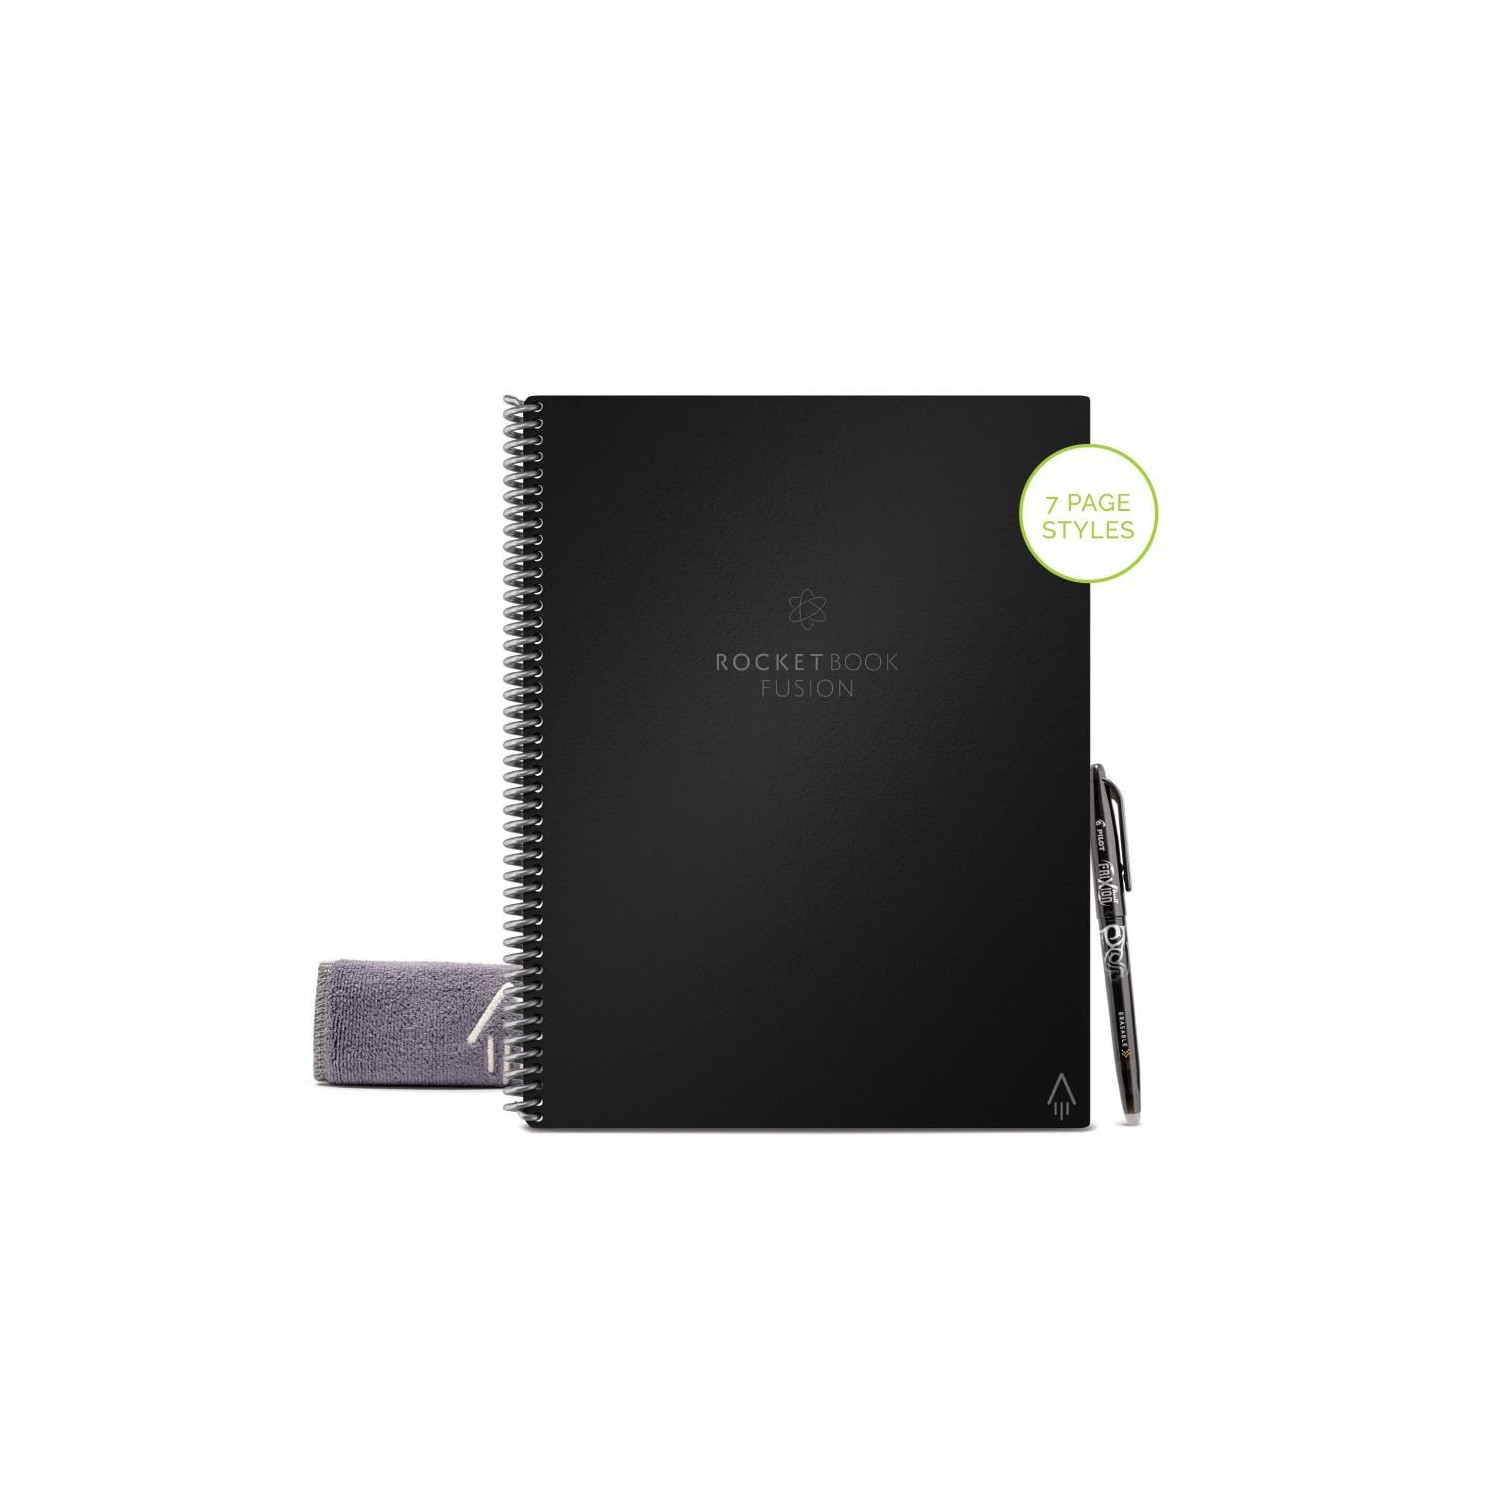 Cuaderno Inteligente Rocketbook A4 Fusion Negro